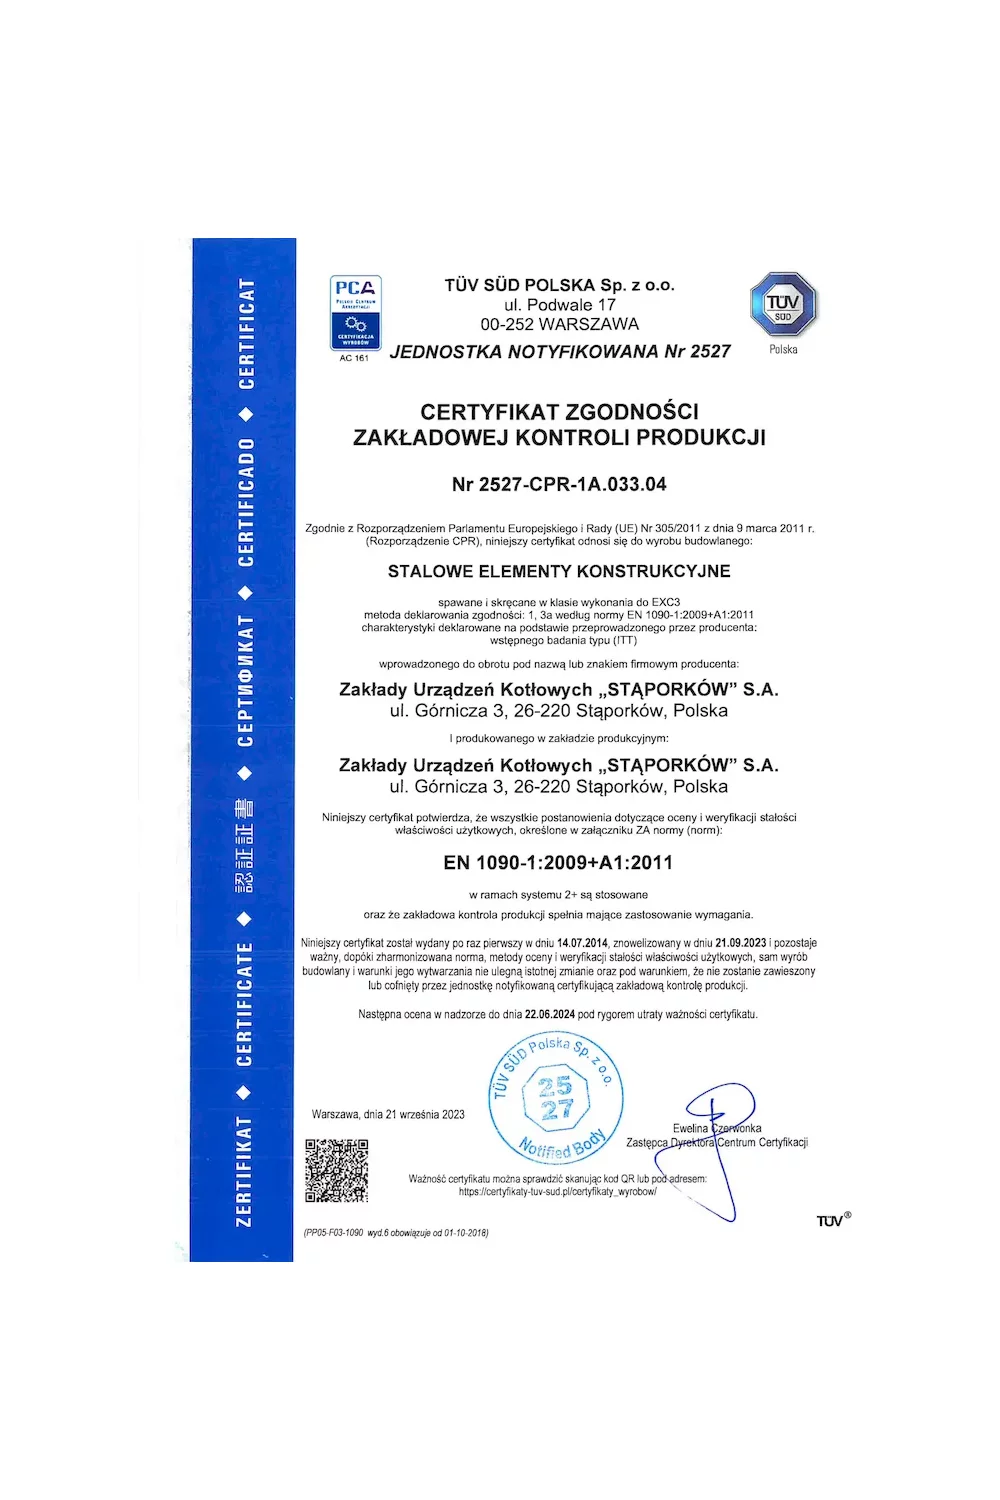 Certyfikat zgodności zakładowej kontroli produkcji EN 1090-1:2009+A1:2011 - zdjęcie